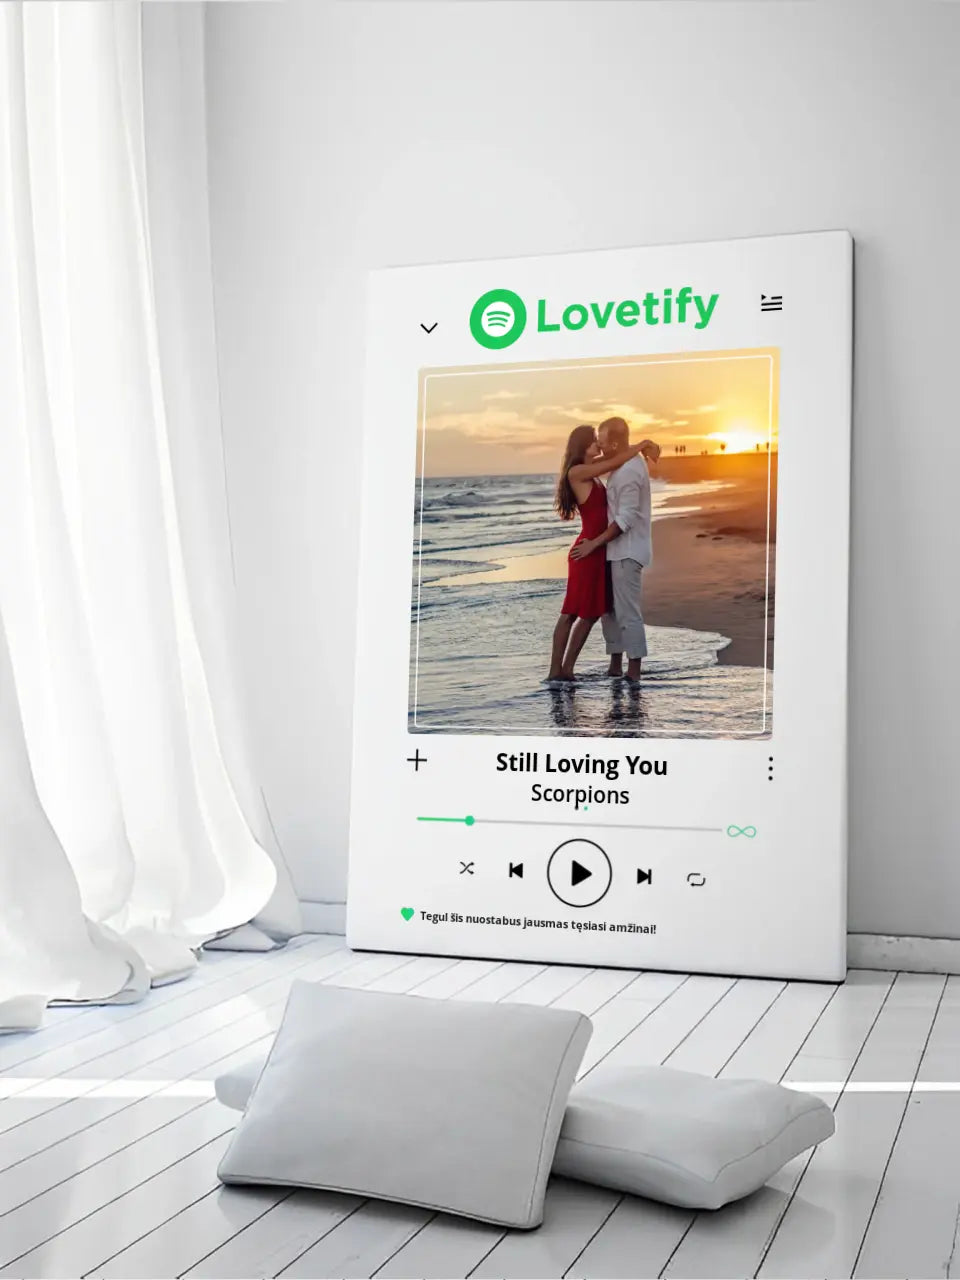 Personalizuotas "lovetify" drobės dizainas su tavo nuotrauka ir pasirinkta daina